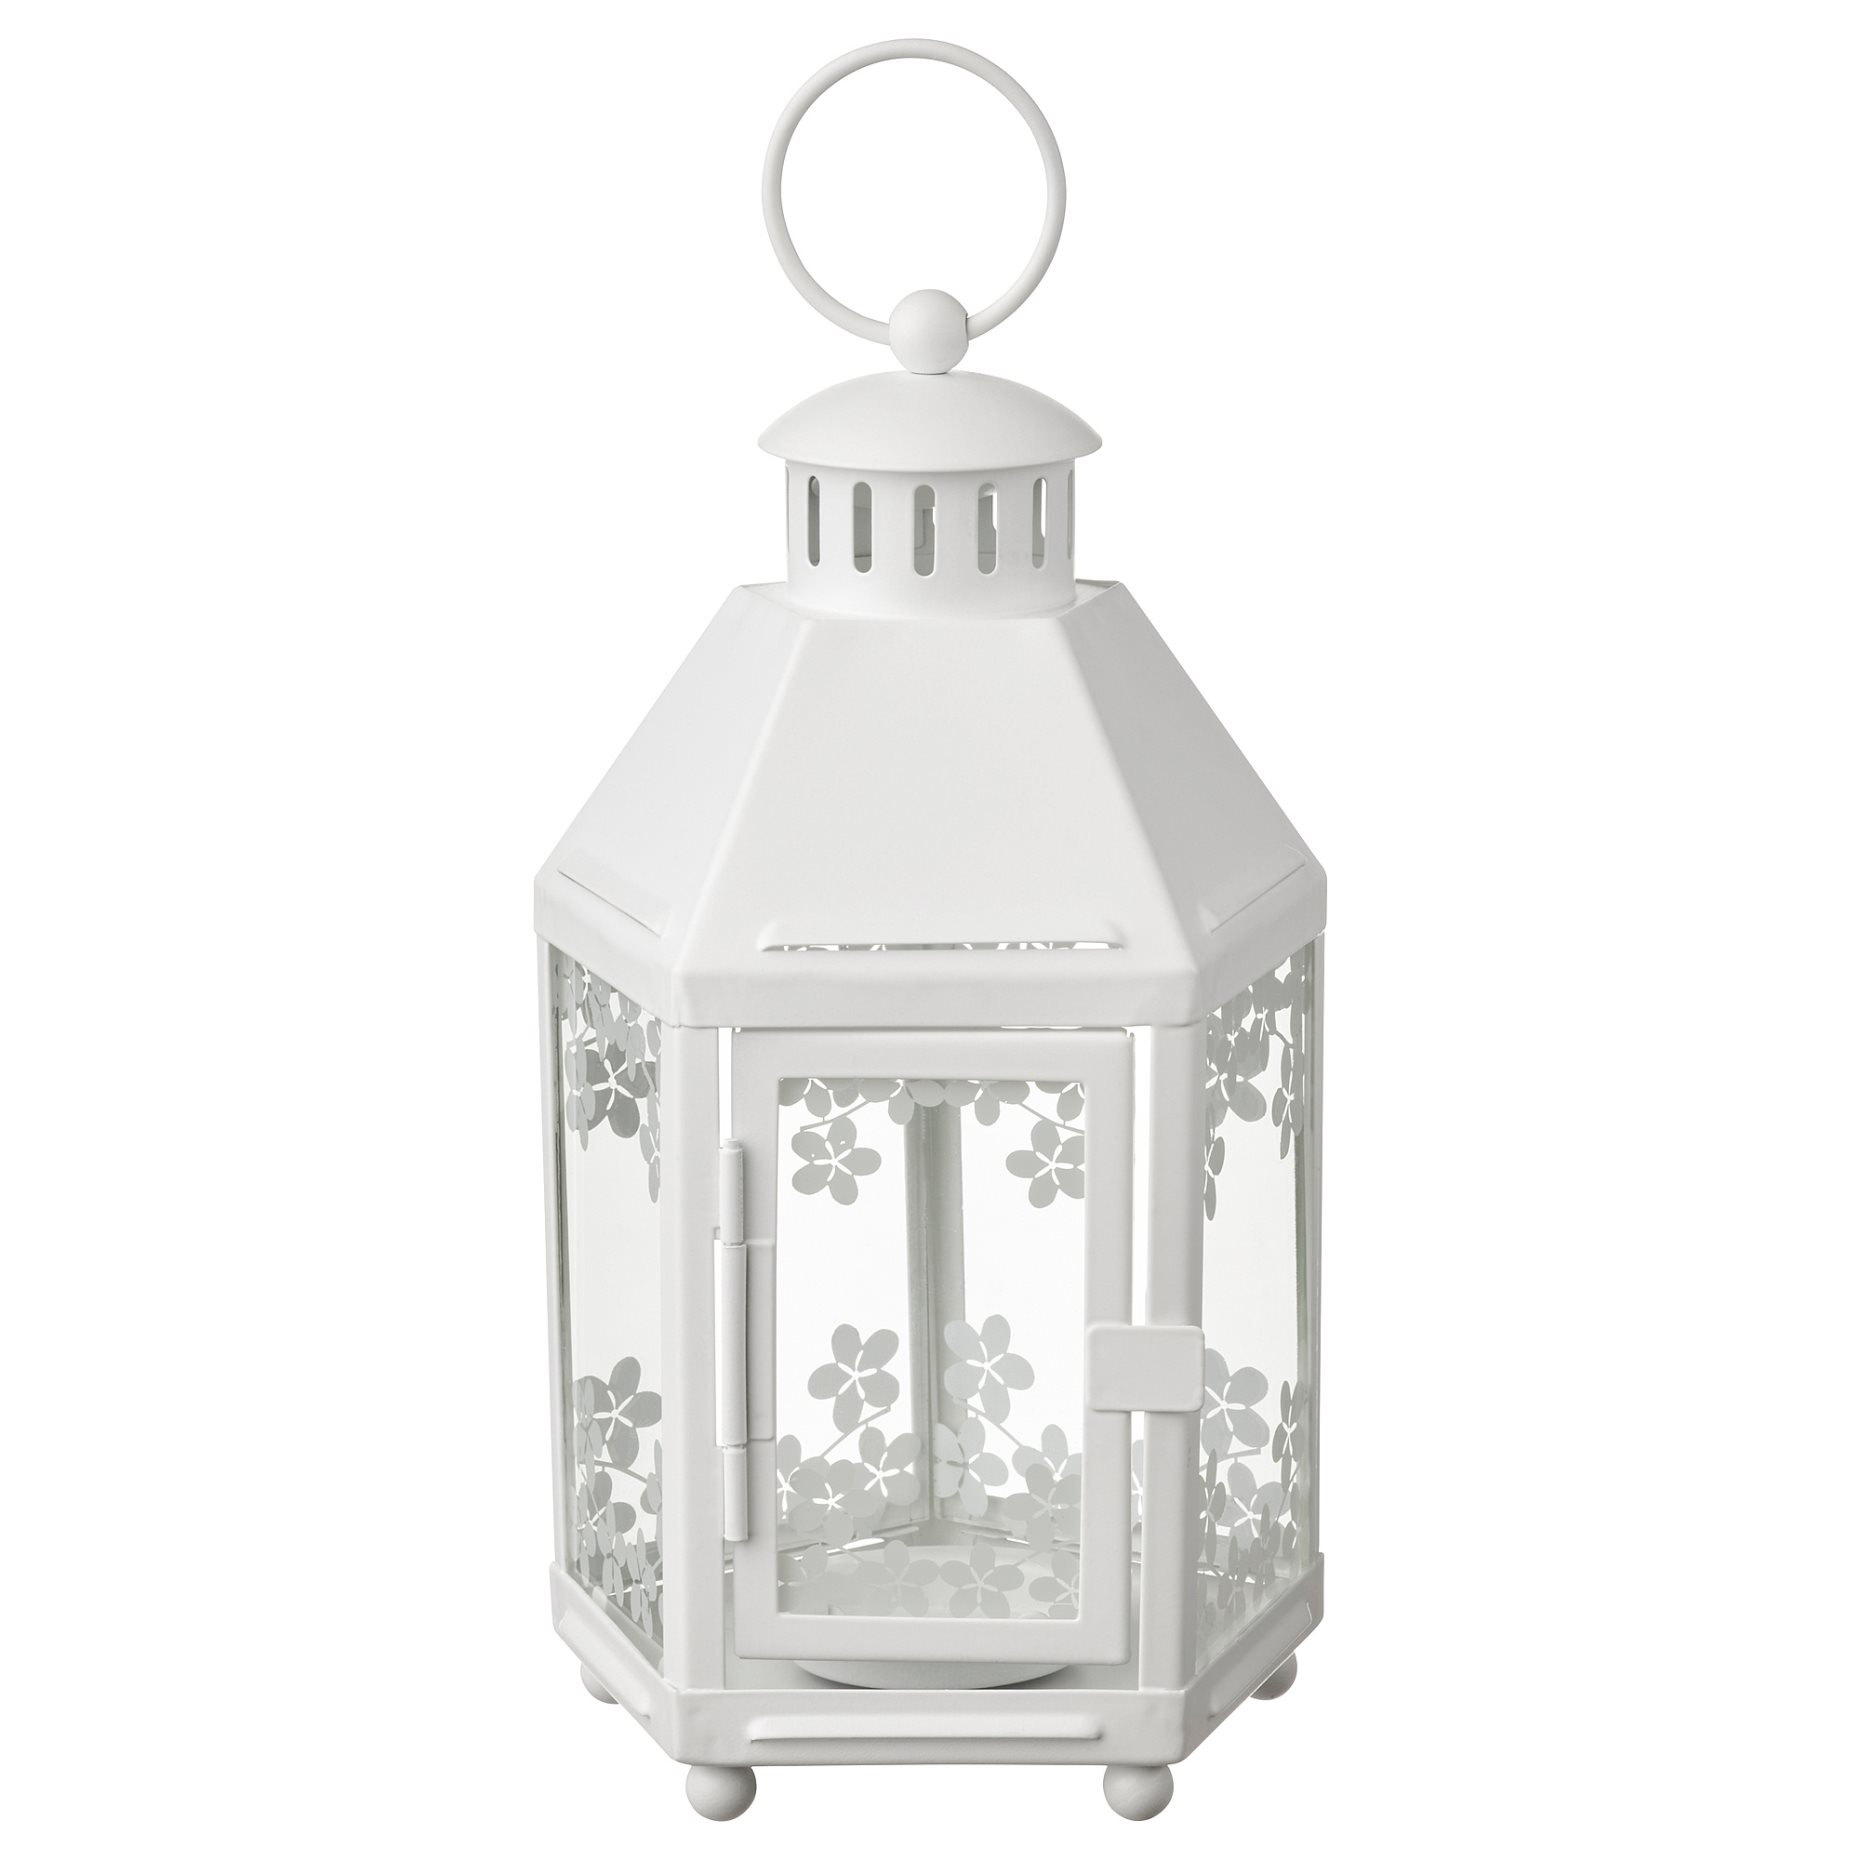 KRINGSYNT, lantern for tealight in/outdoor, 21 cm, 705.097.02